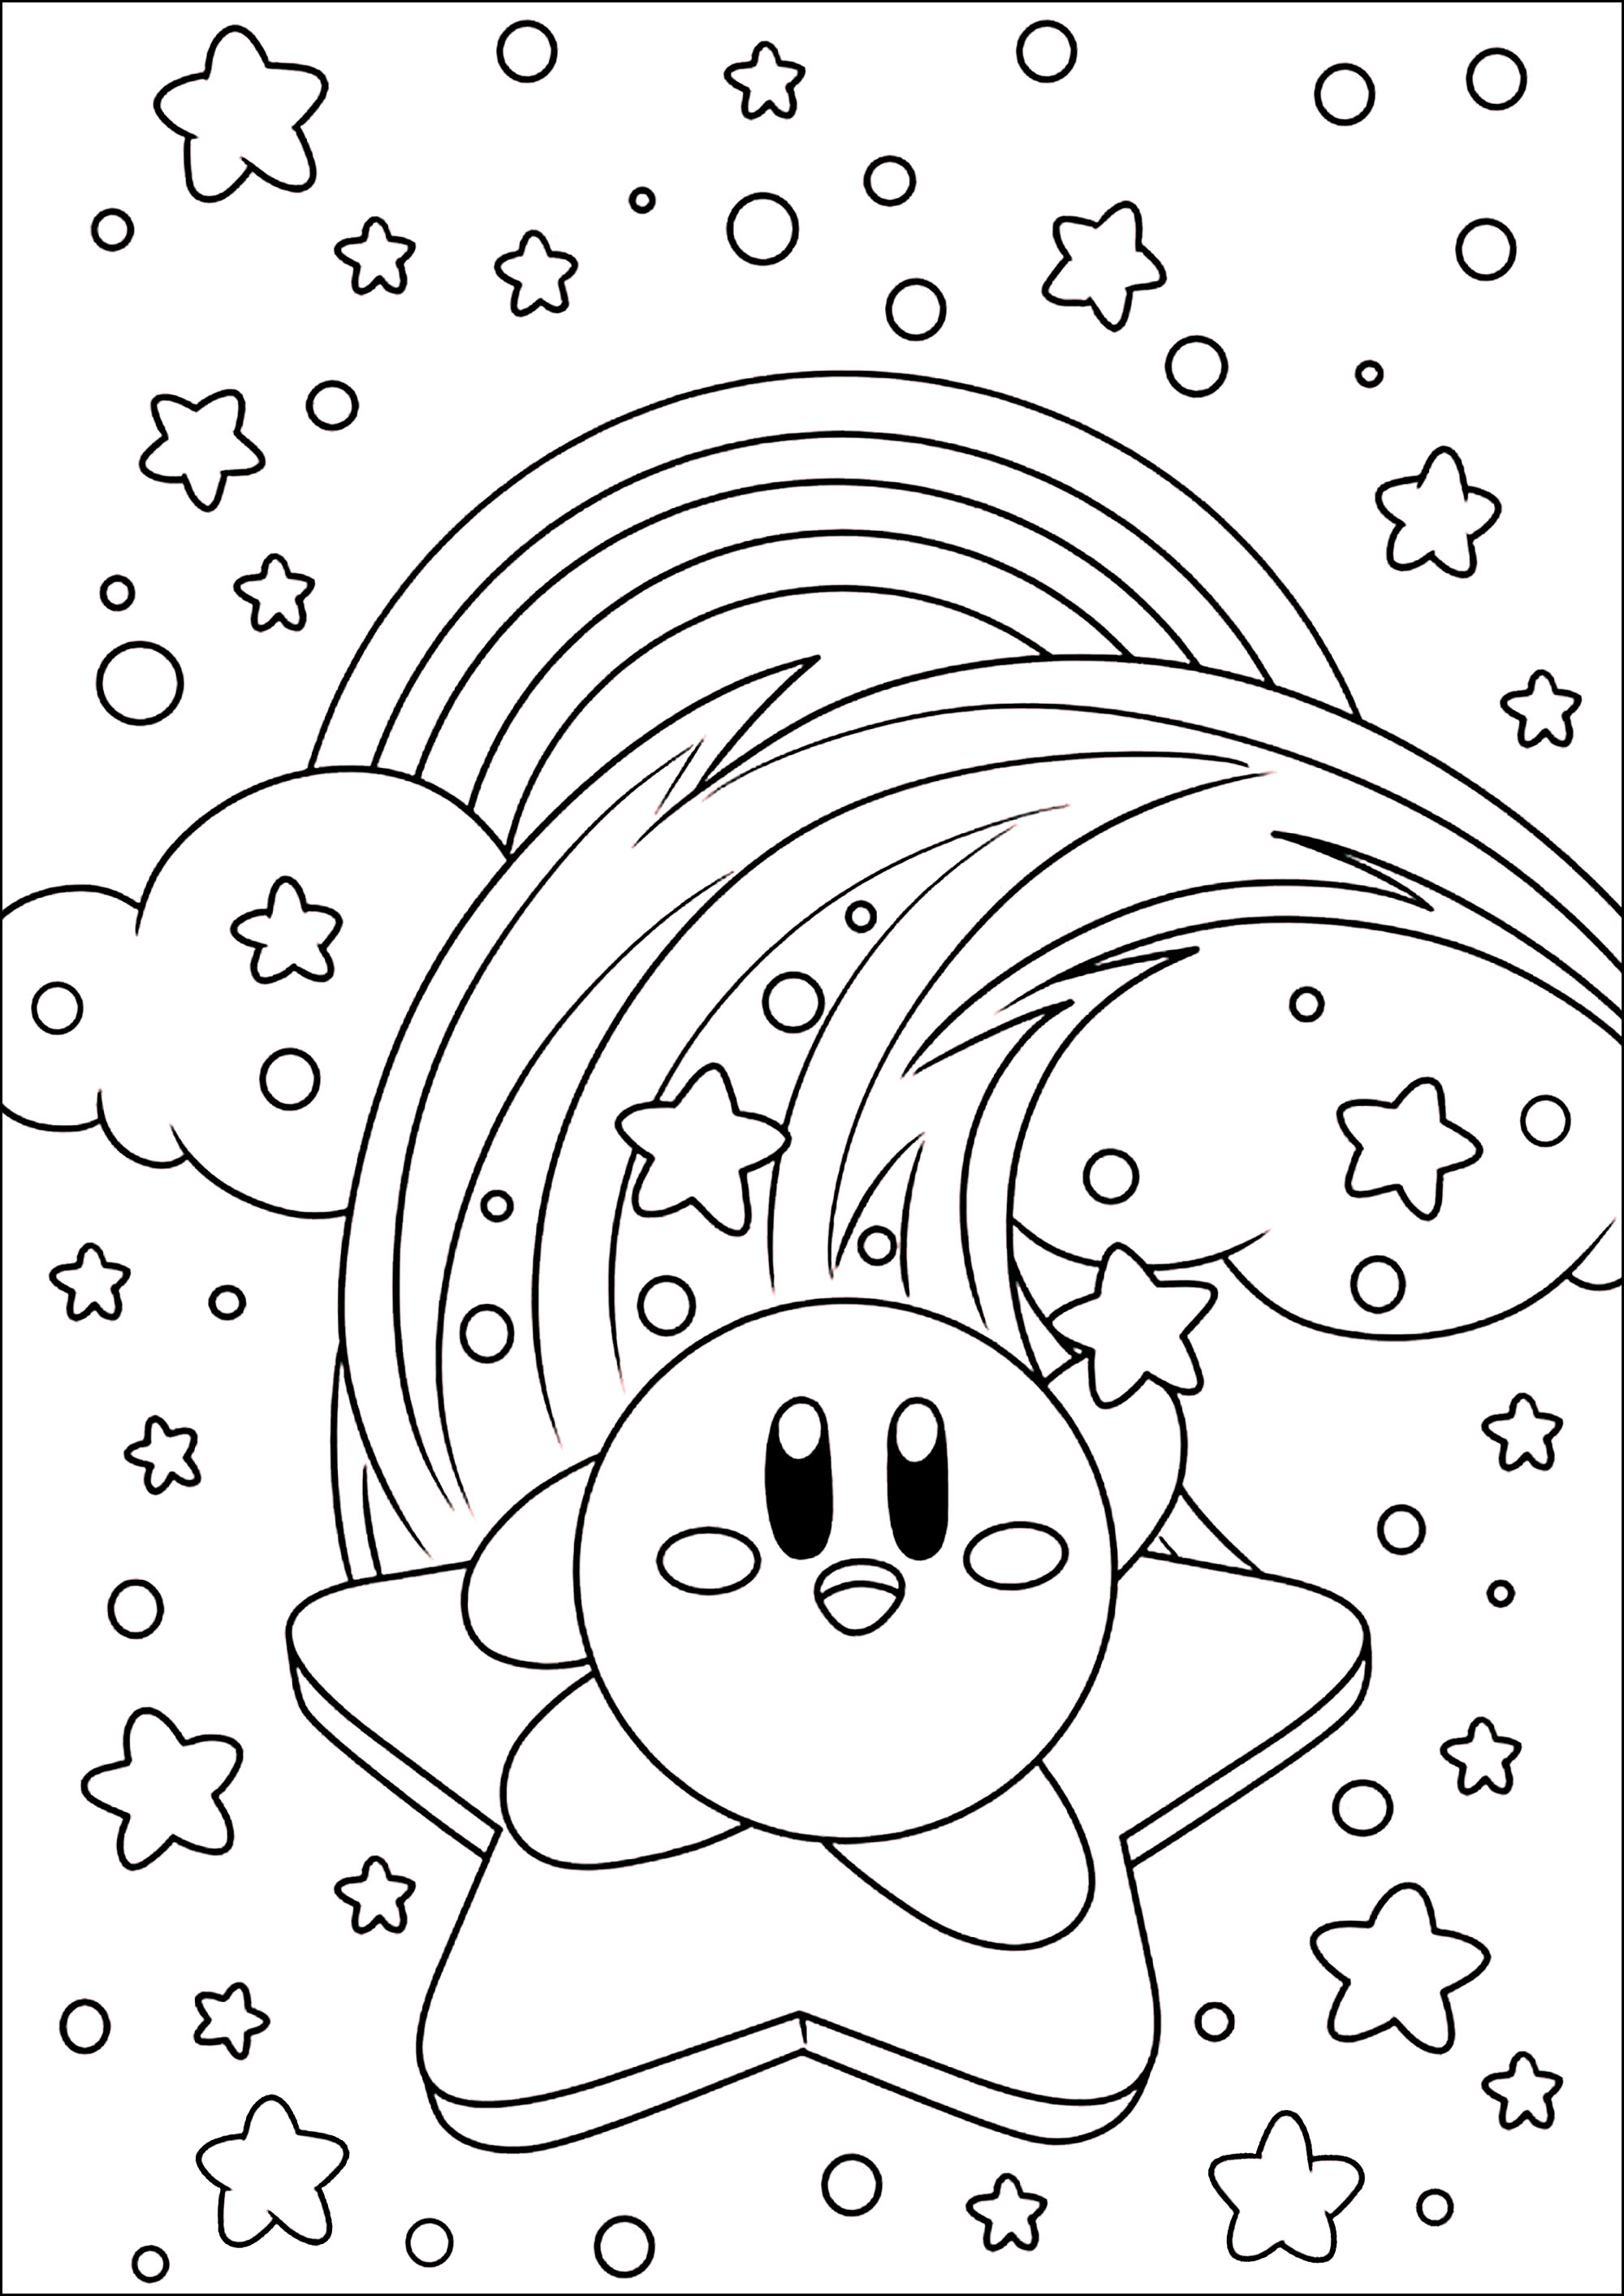 Kirby auf einem Stern am Himmel mit Wolken und Regenbogen. Kirby (カービィ, Kābī, ausgesprochen auf Japanisch: [kaːbiː]) ist eine Videospielfigur, die von Masahiro Sakurai für die Firma Nintendo entwickelt wurde. Es ist ein kleiner rosa Ball vom Planeten Popstar, der seine Feinde ansaugt, um deren Kräfte zu 'kopieren'.